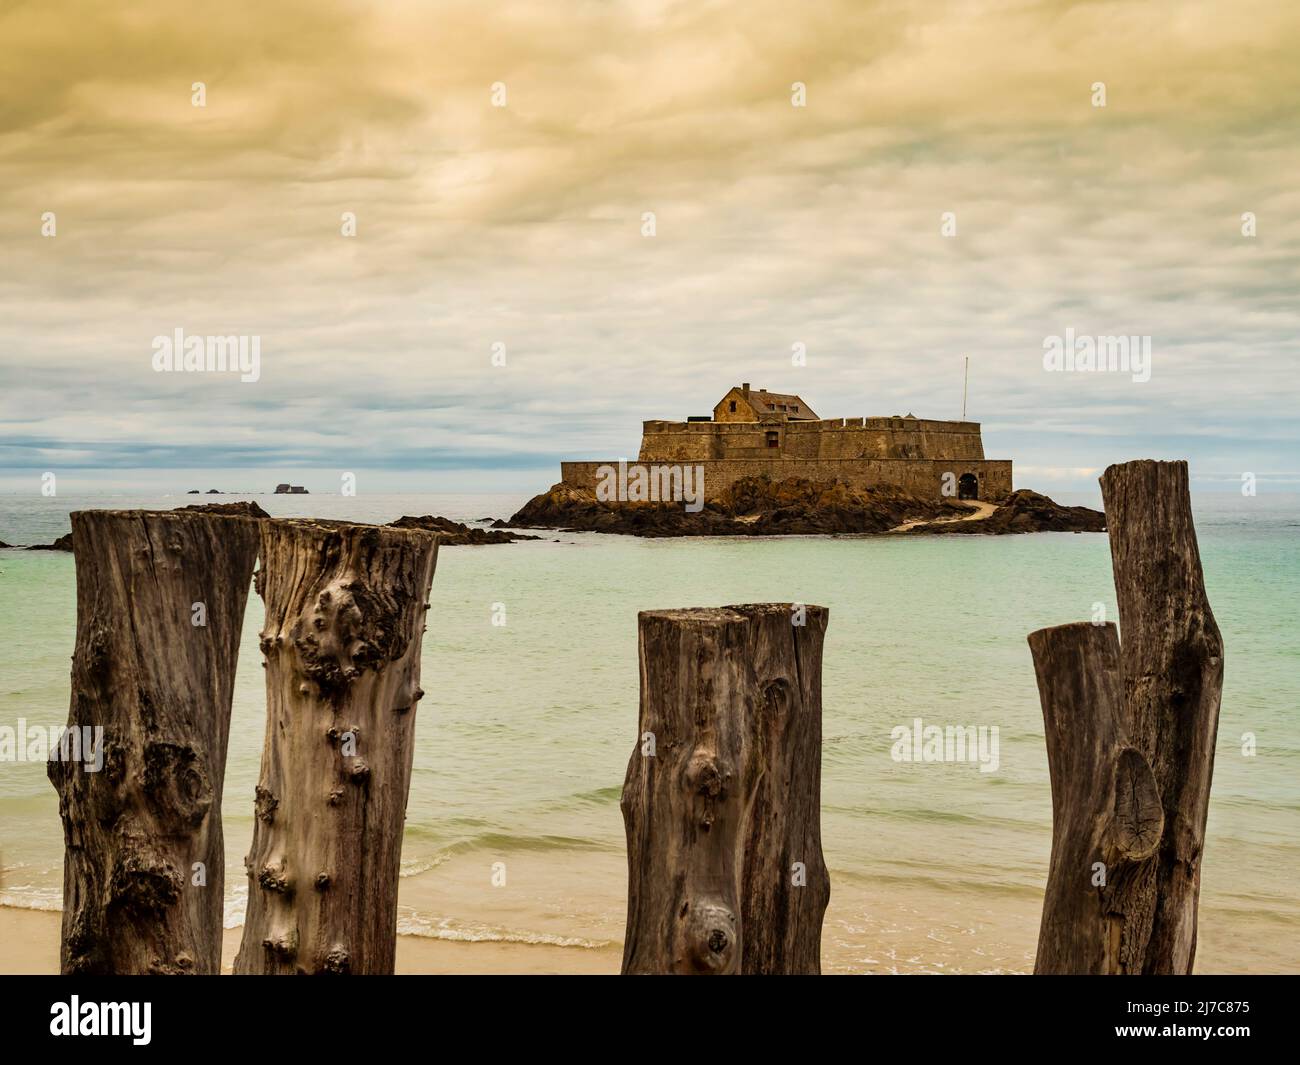 Saint Malo, vista impressionante dell'isola di marea di Fort National, Bretagna, Francia Foto Stock